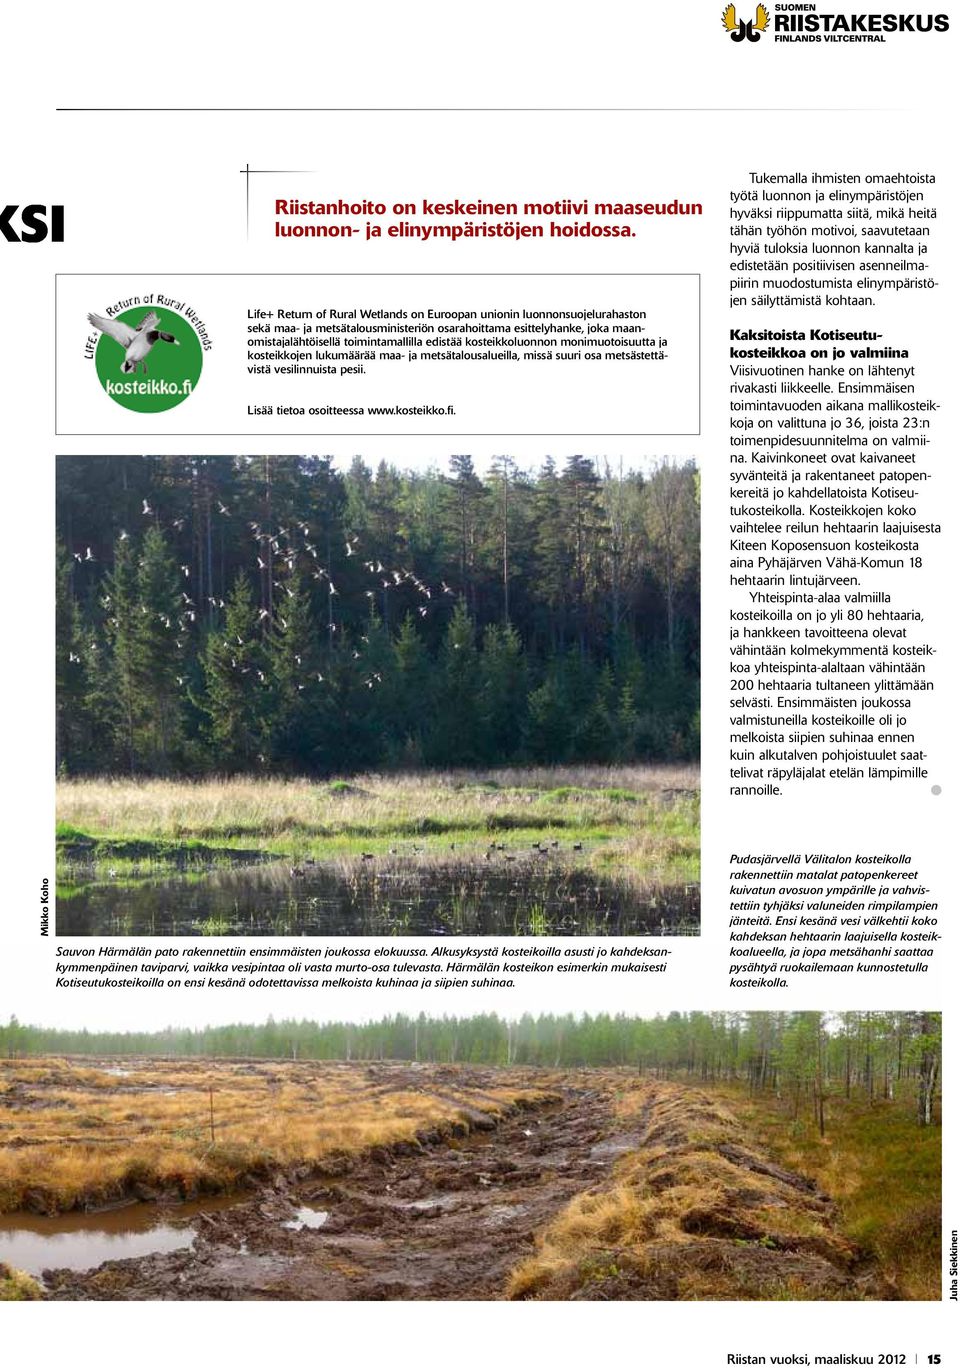 kosteikkoluonnon monimuotoisuutta ja kosteikkojen lukumäärää maa- ja metsätalousalueilla, missä suuri osa metsästettävistä vesilinnuista pesii. Lisää tietoa osoitteessa www.kosteikko.fi.